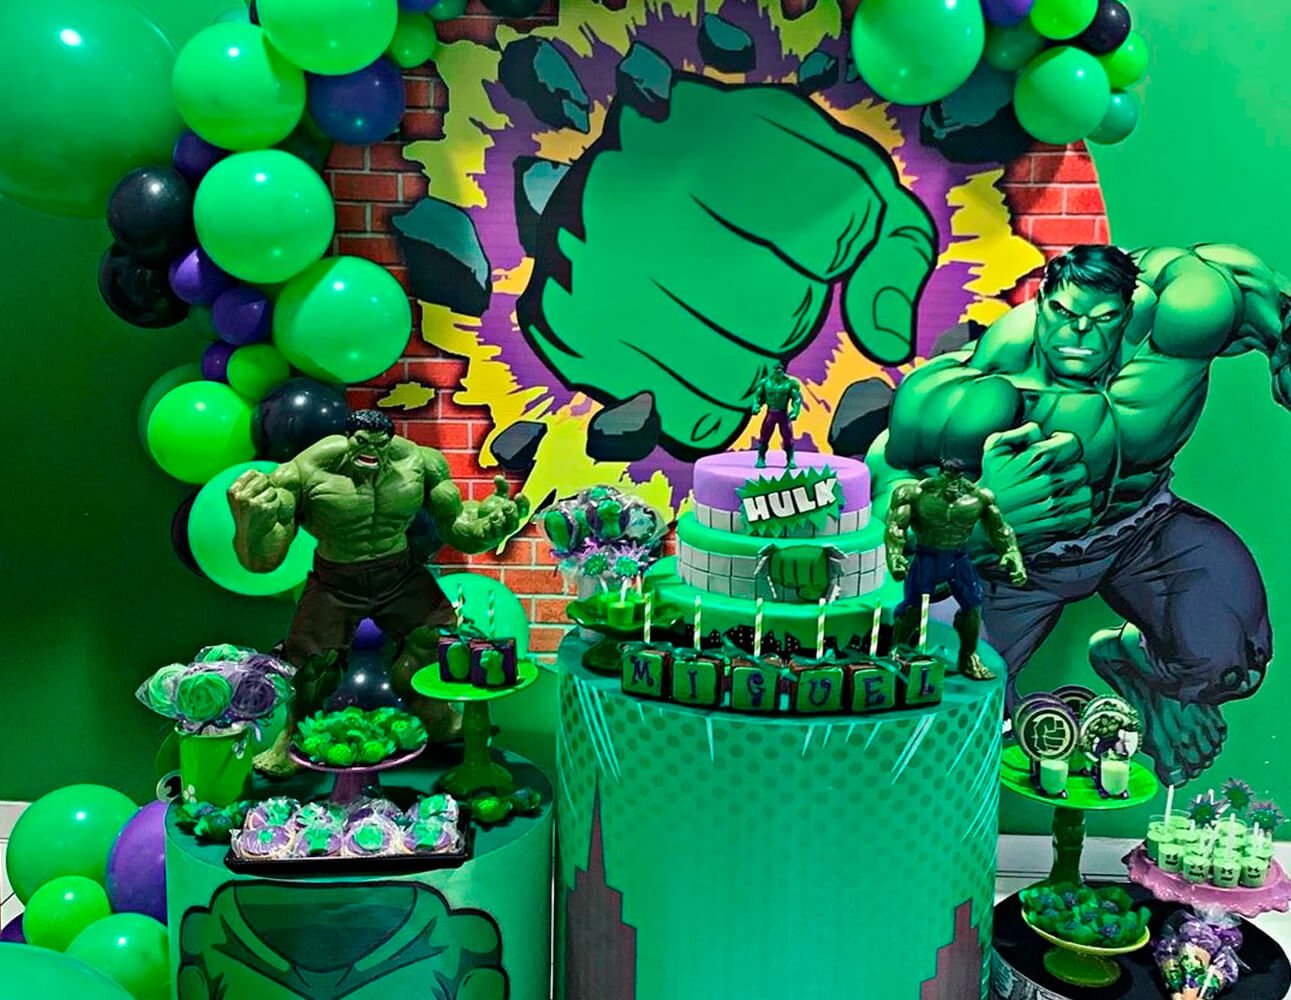 Copo + Bonequinho Infantil de Personagem - Hulk, Homem Aranha